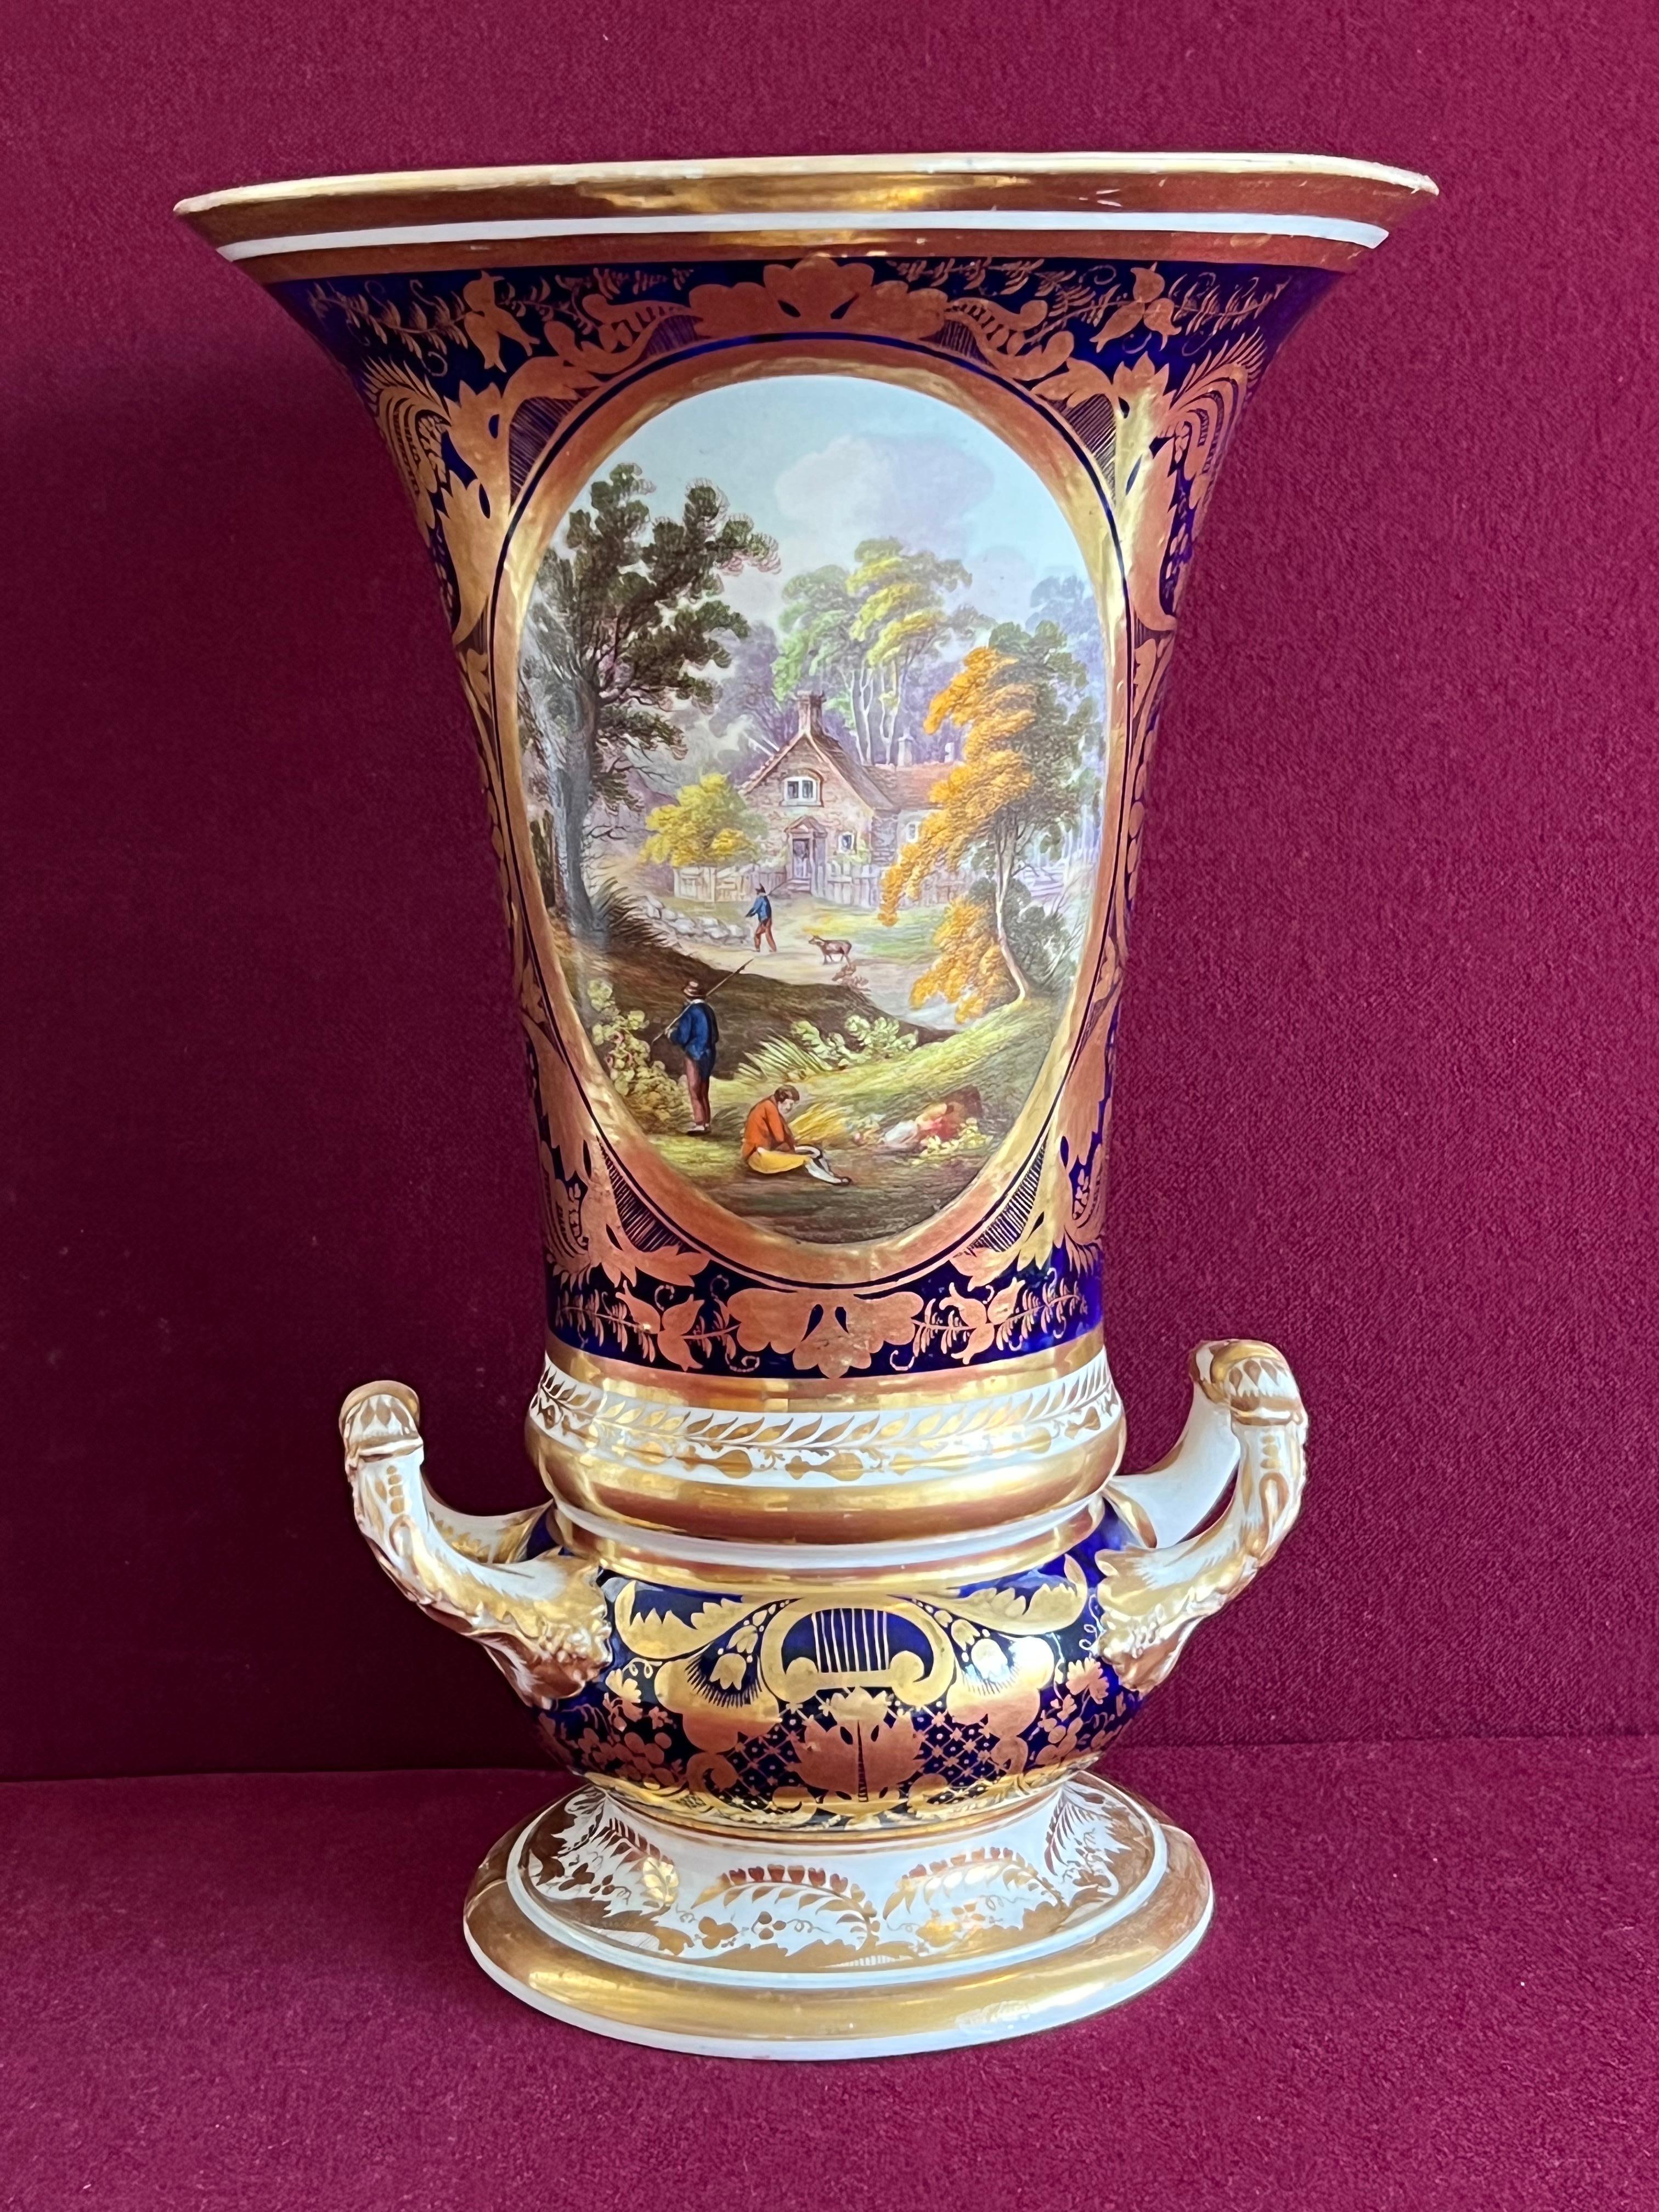 Vase en porcelaine de Derby, C.I.C., vers 1810. De forme campanaire allongée, avec deux poignées en forme de feuille à enroulement doré, sur un pied circulaire étalé, avec un décor de feuillage doré et un bord de bandeau doré. Le corps est décoré